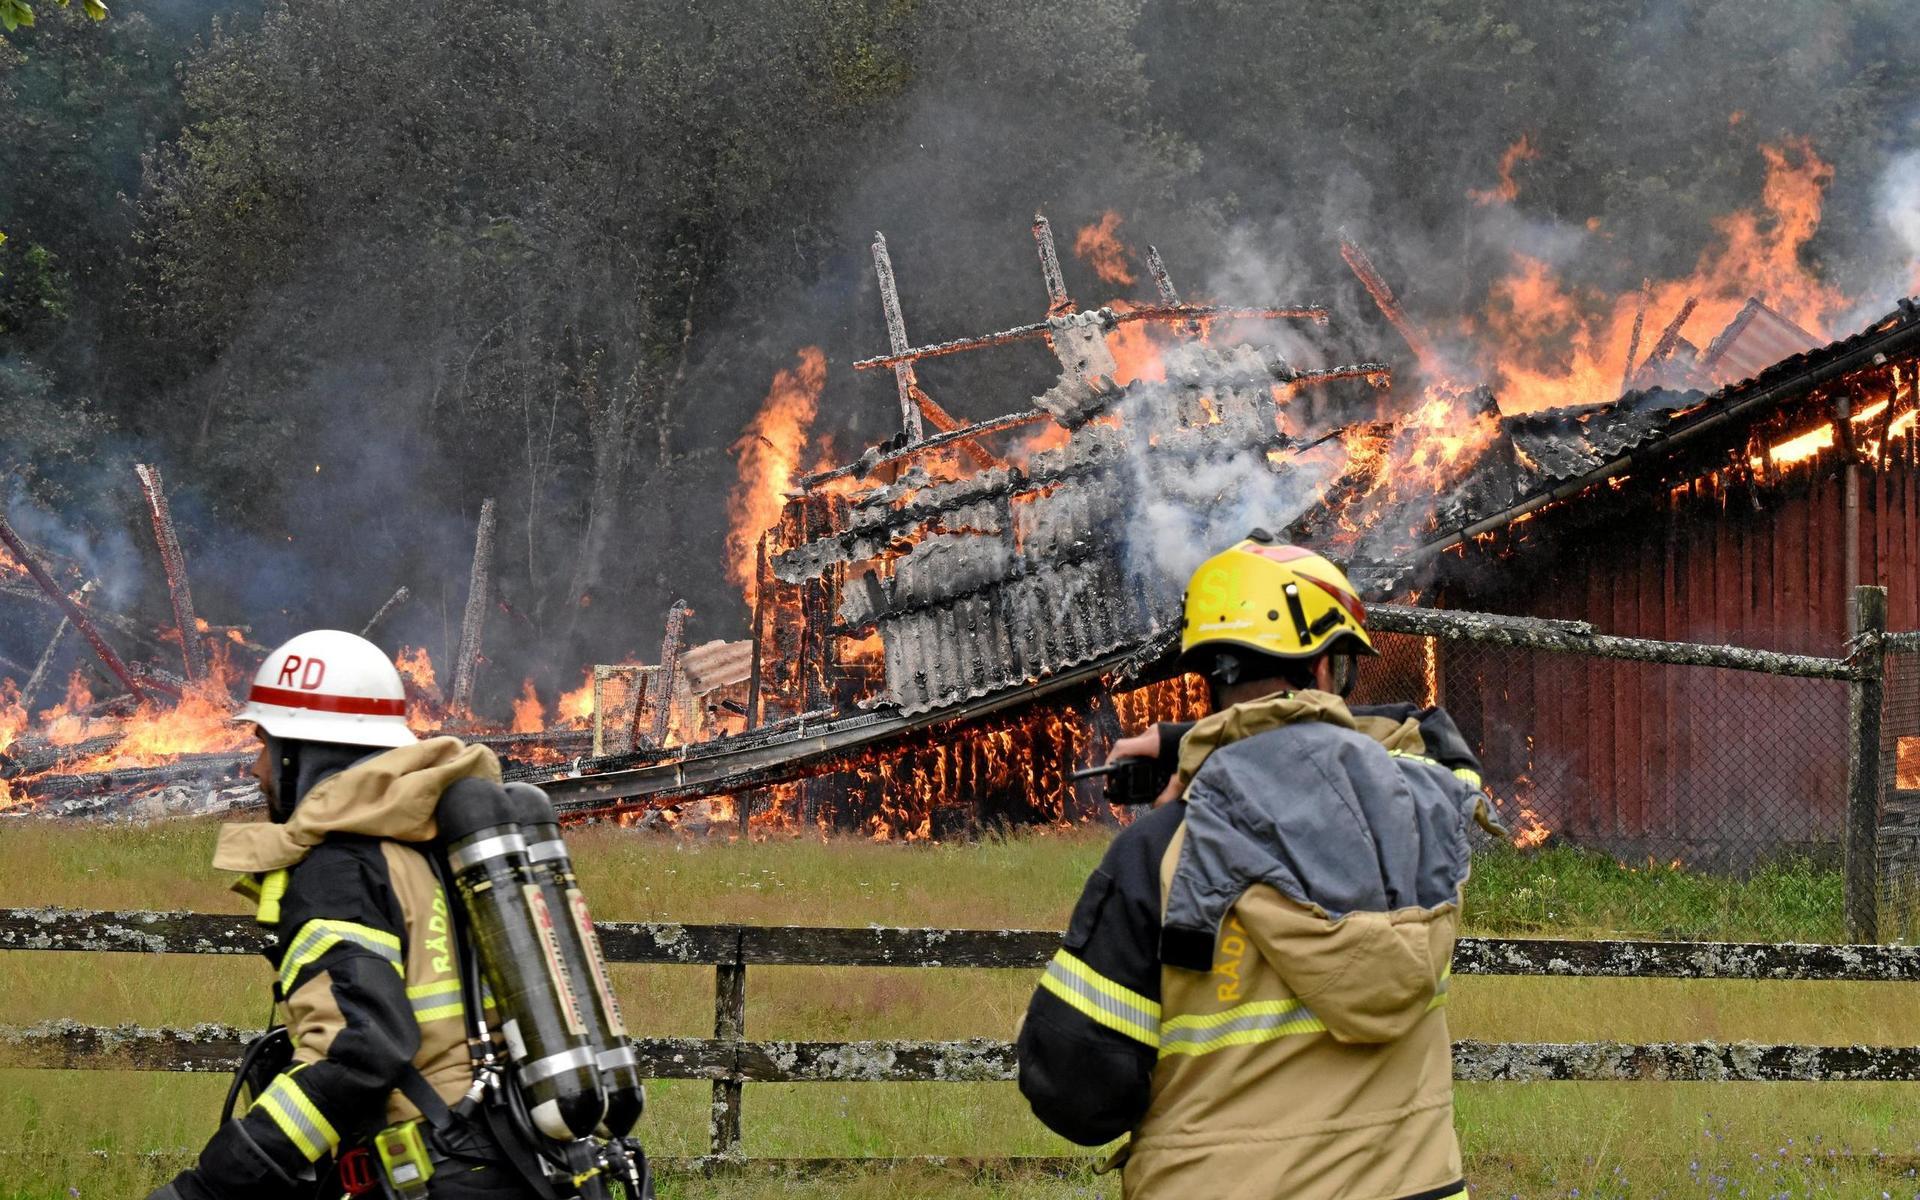 30 juli. En brand förstörde en ladugård i Lopered söder om Torup. Under året brann även en ladugård i Lintalund och ett sågverk i Femsjö ned till grunden.